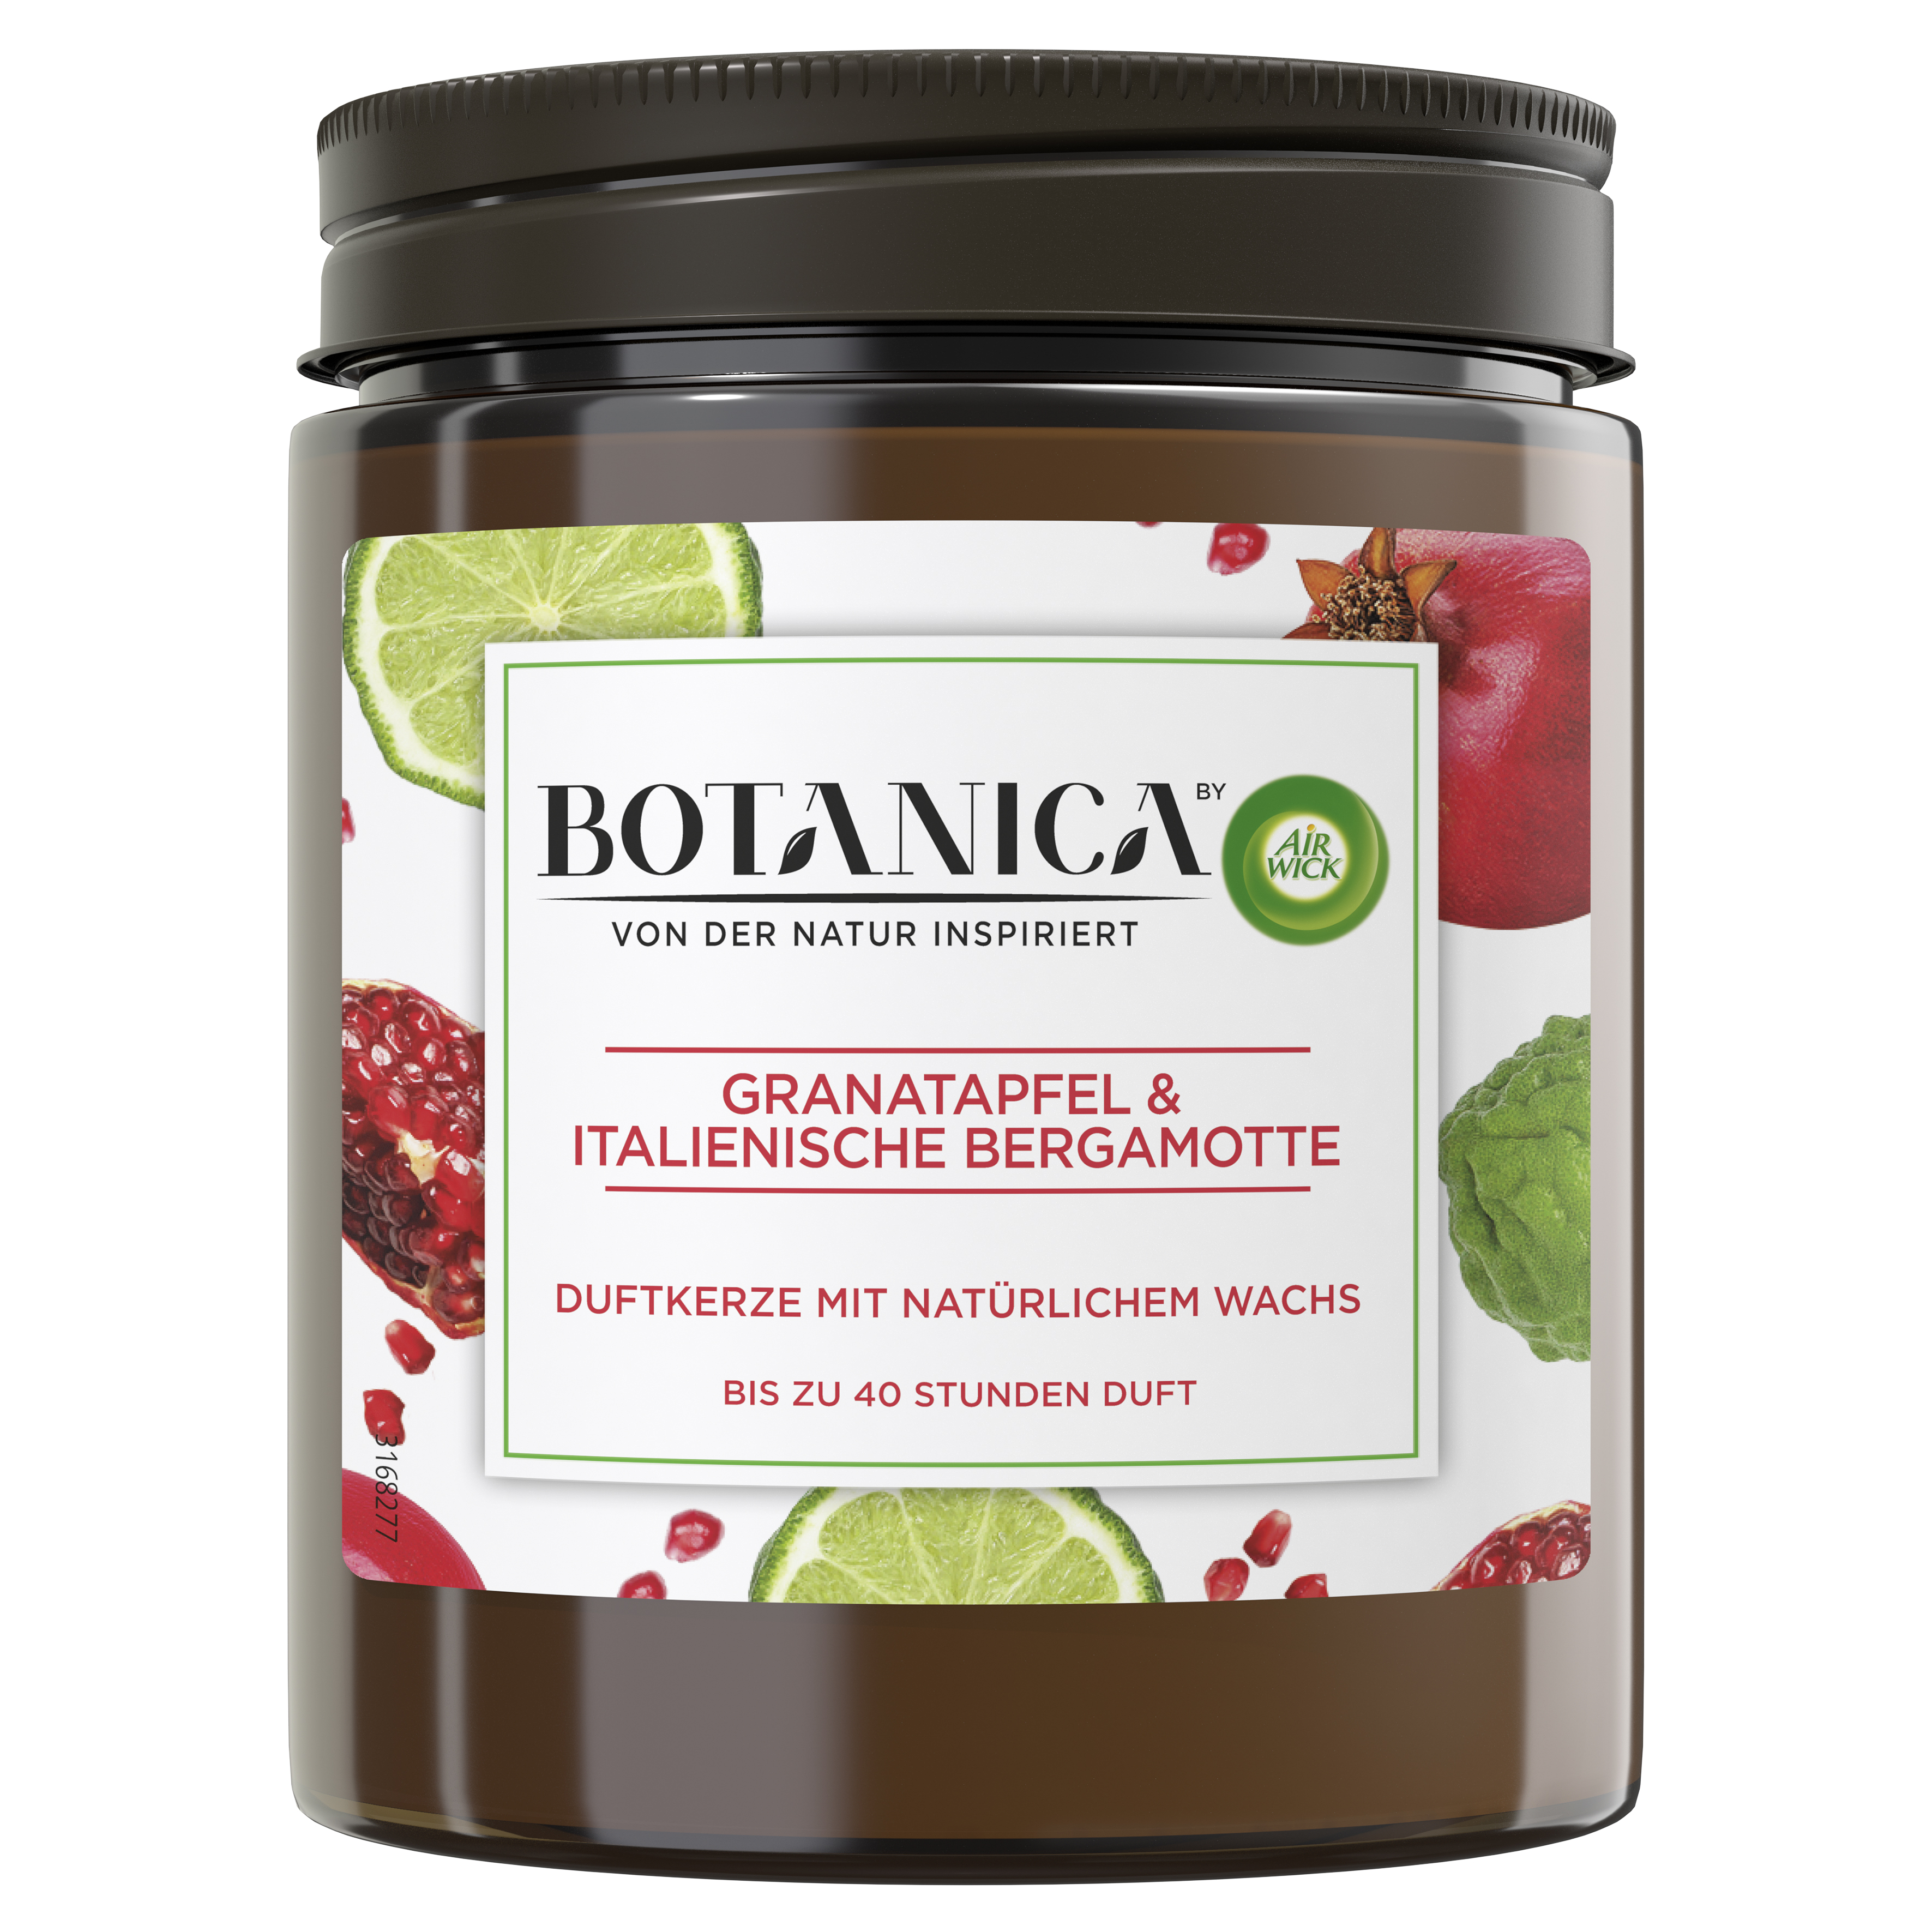 Air Wick Botanica Duftkerze Granatapfel & Italienische Bergamotte